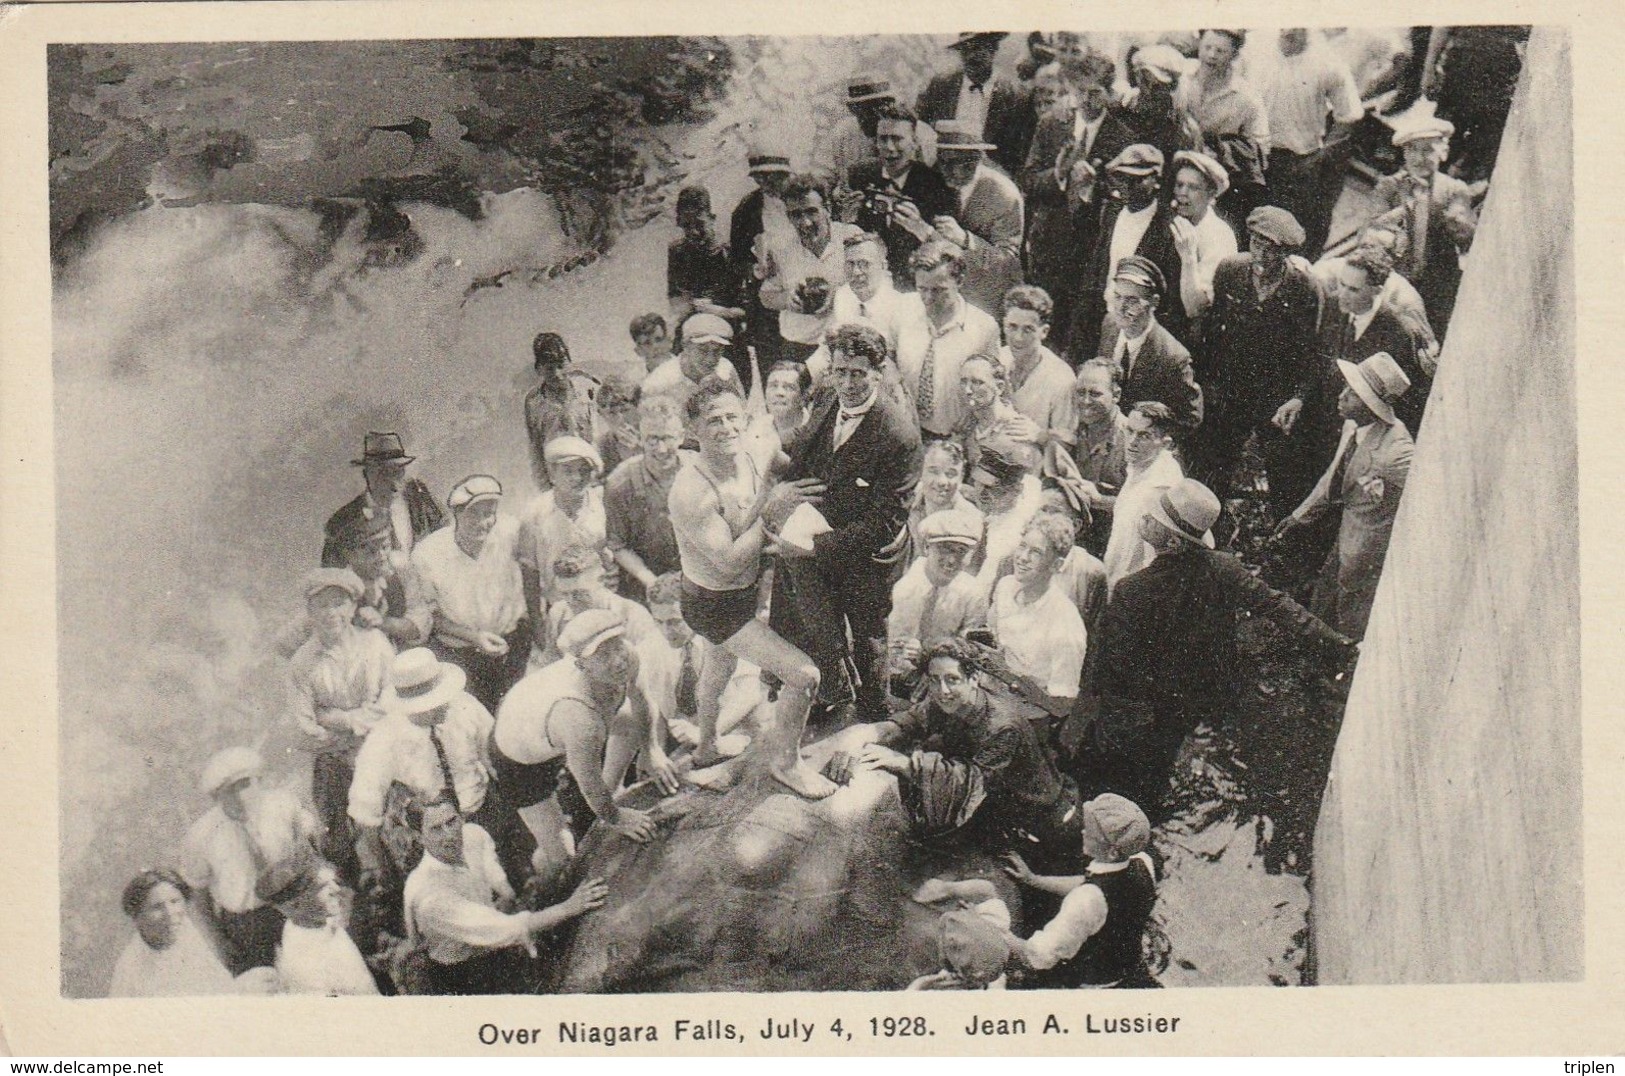 Over Niagara Falls, July 4, 1928 - Jean A. Lussier - Daredevil - Salto De Trampolin